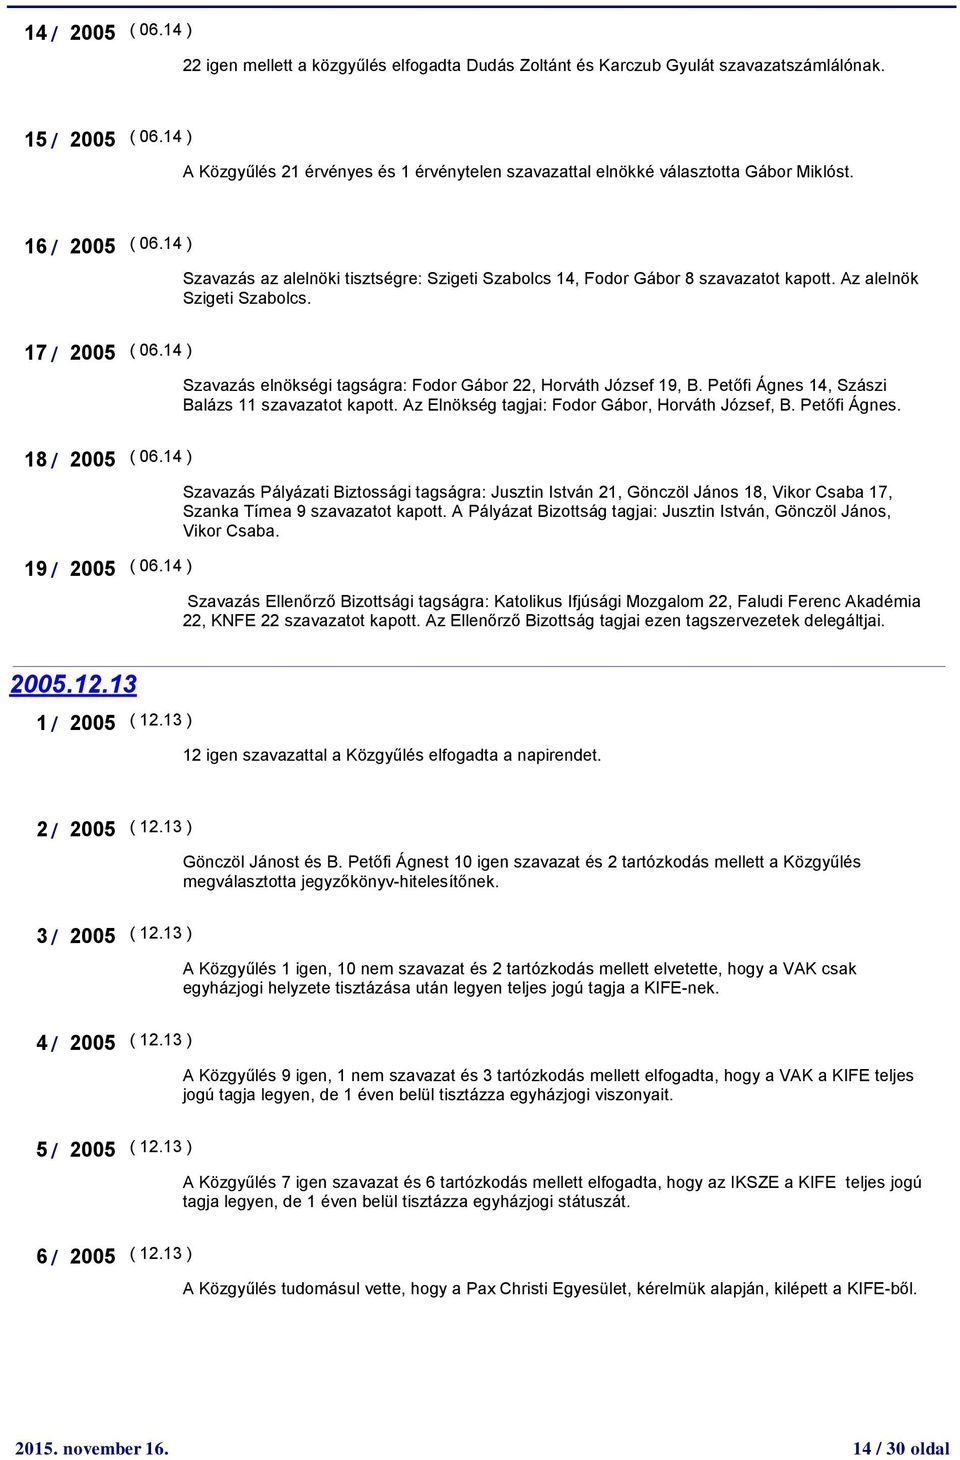 Az alelnök Szigeti Szabolcs. 17 / 2005 ( 06.14 ) Szavazás elnökségi tagságra: Fodor Gábor 22, Horváth József 19, B. Petőfi Ágnes 14, Szászi Balázs 11 szavazatot kapott.